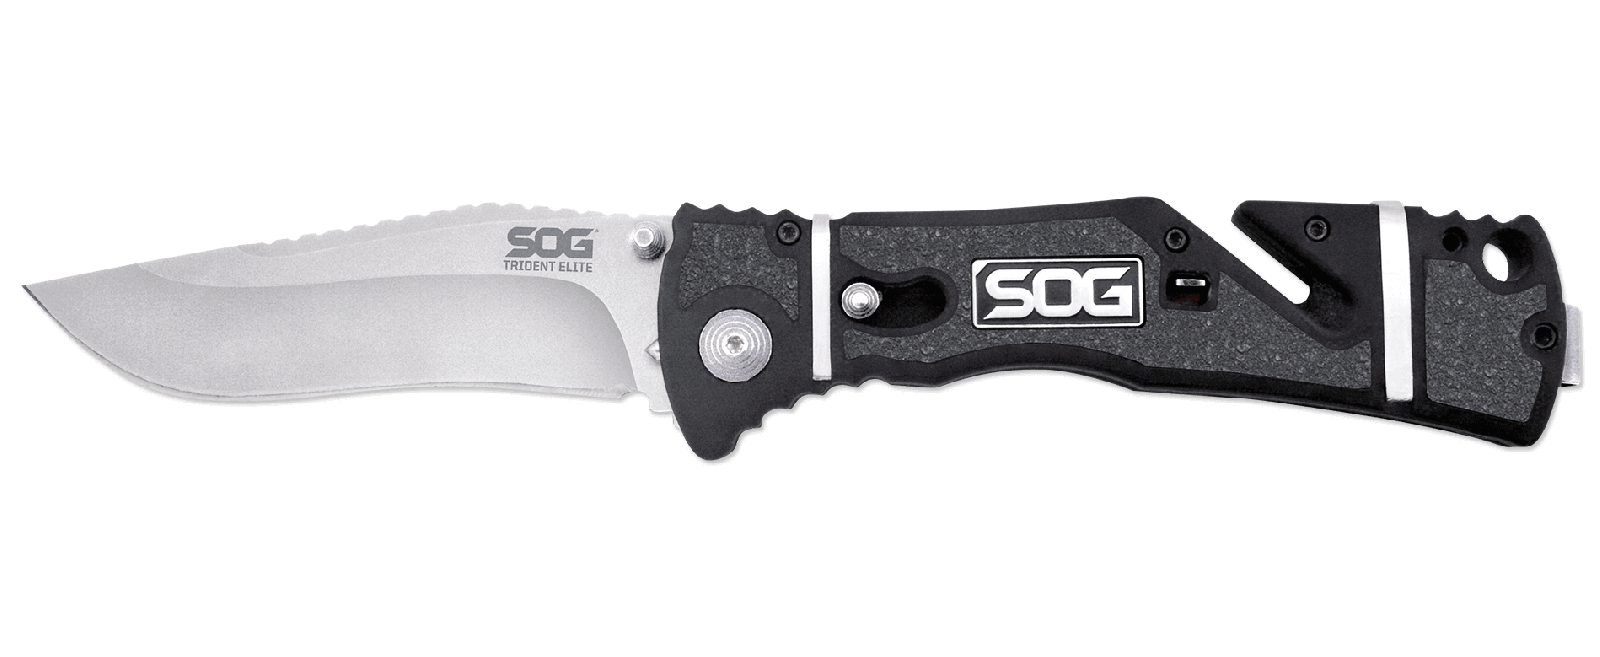 Складной нож TRIDENT ELITE - SOG TF101, сталь AUS-8, рукоять термопластик GRN с резиновыми вставками - фото 10